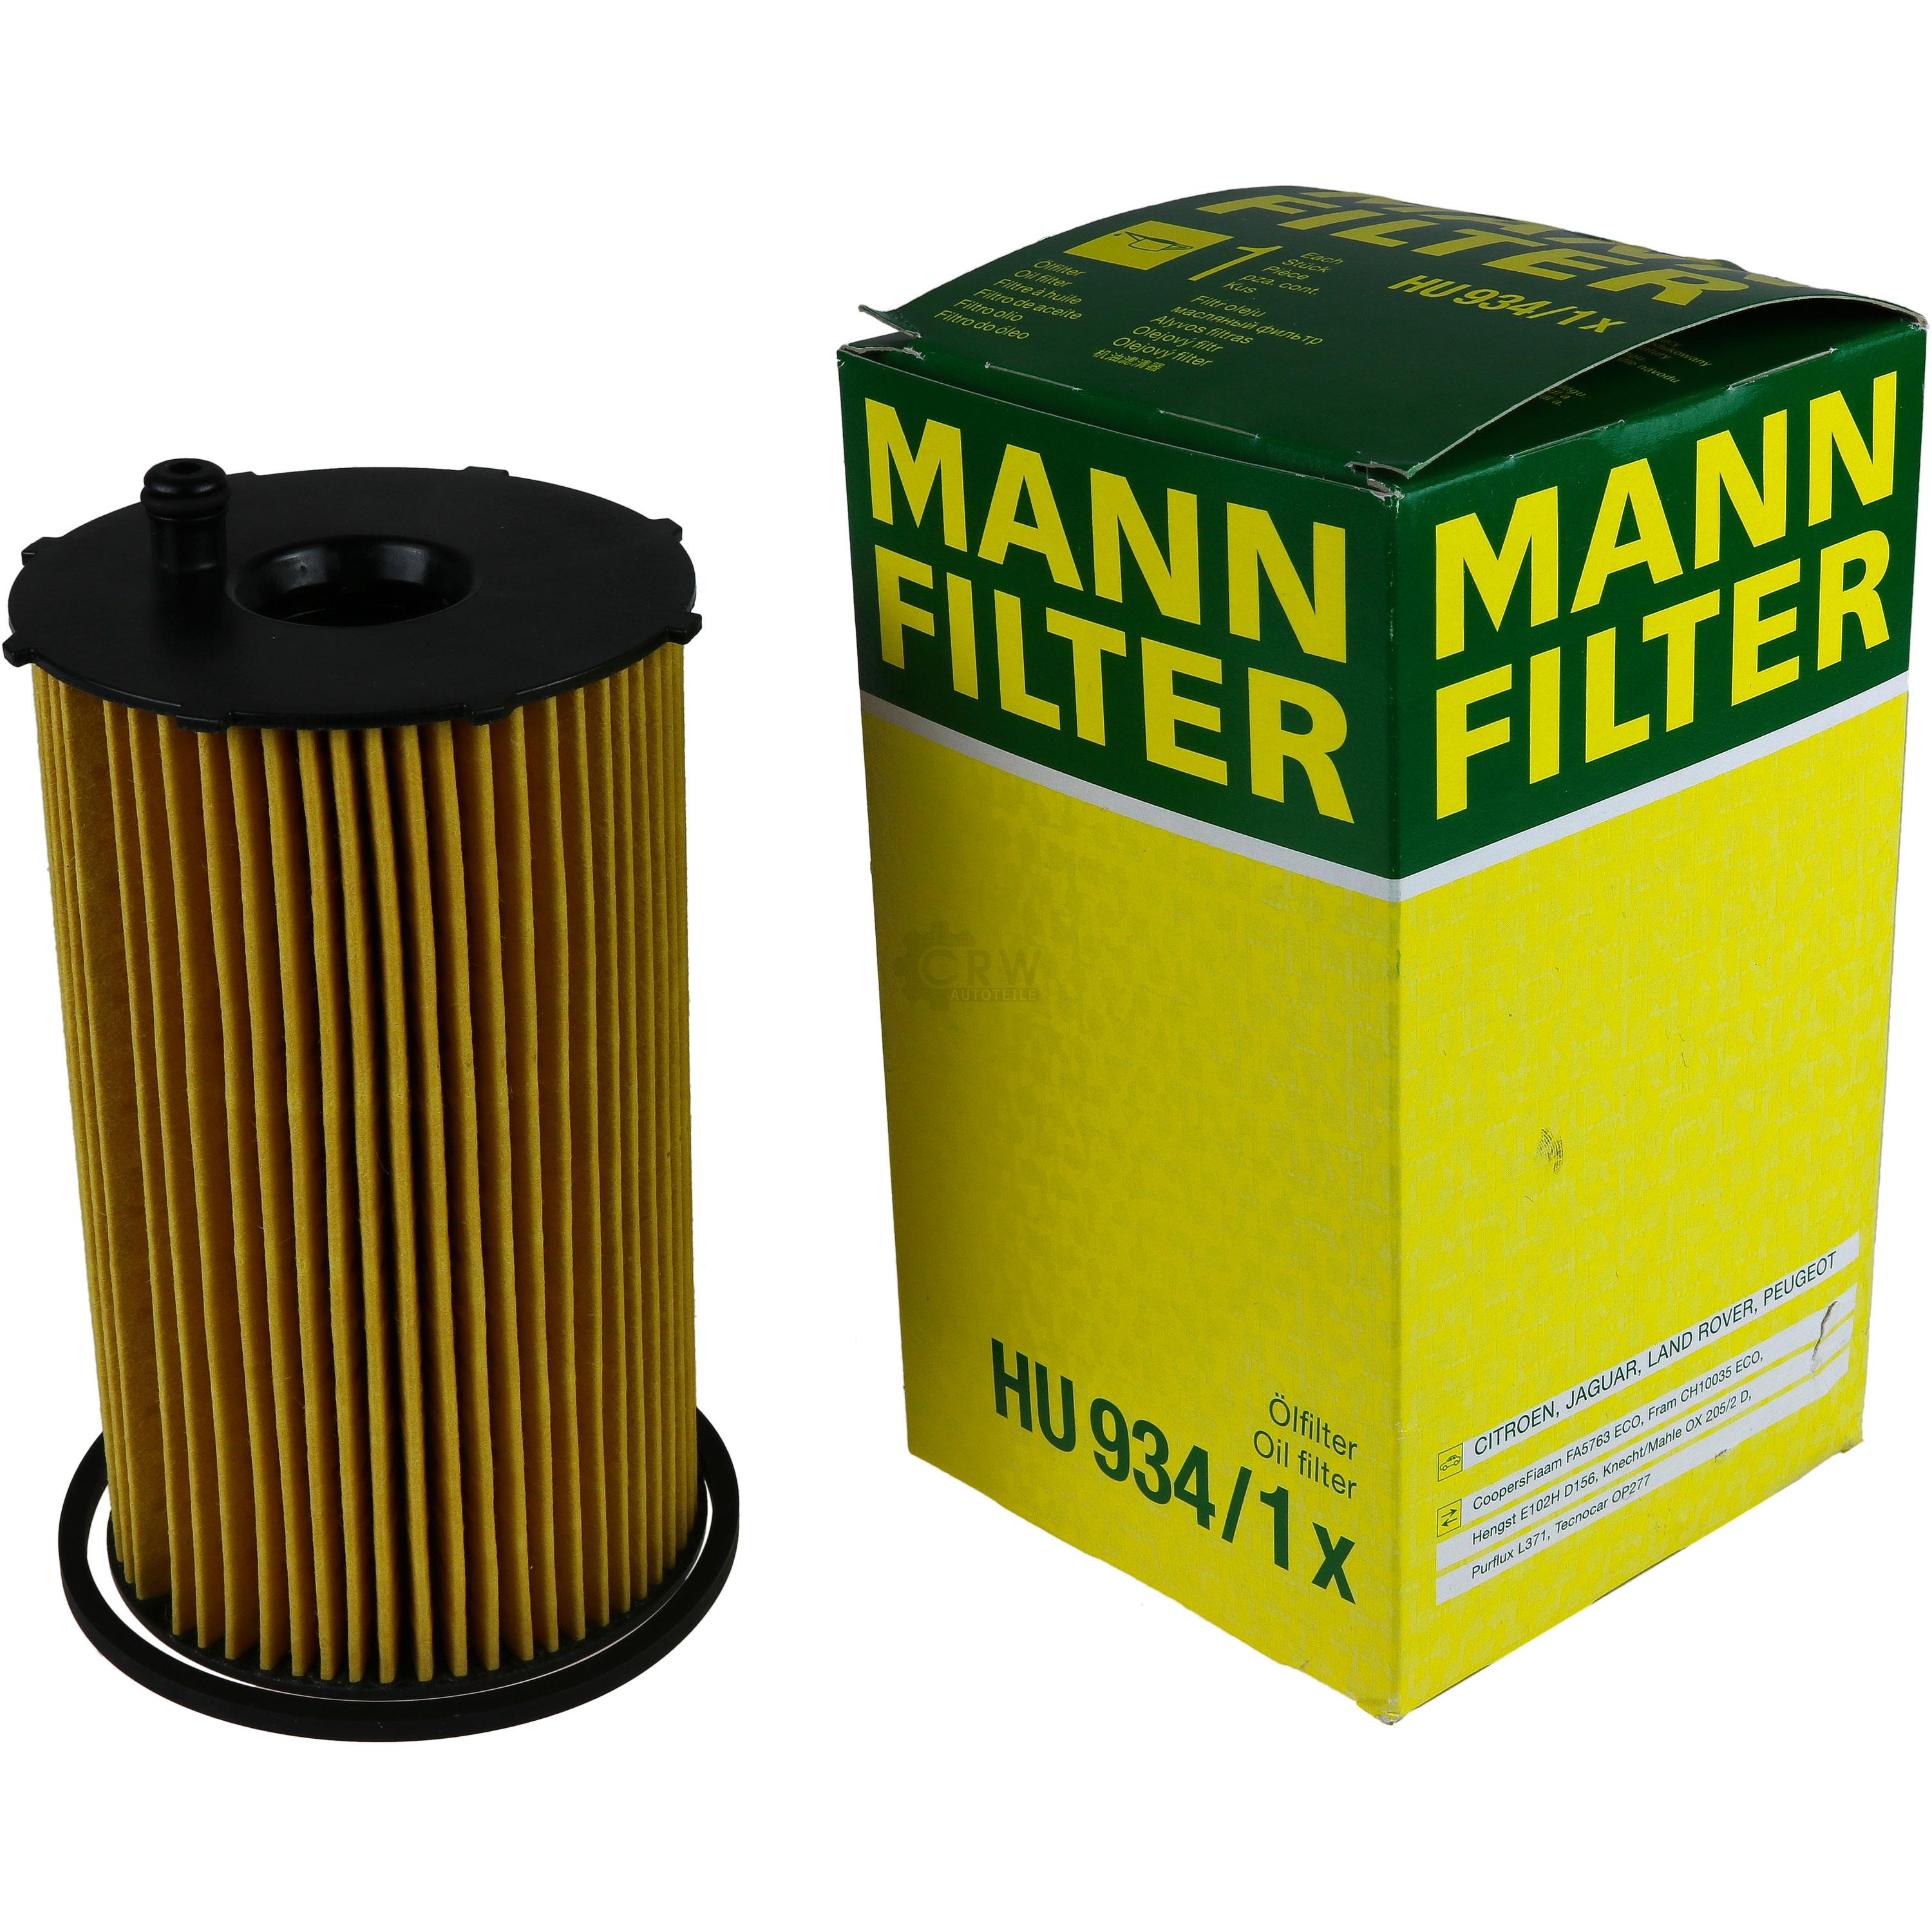 MANN-FILTER Ölfilter HU 934/1 x Oil Filter